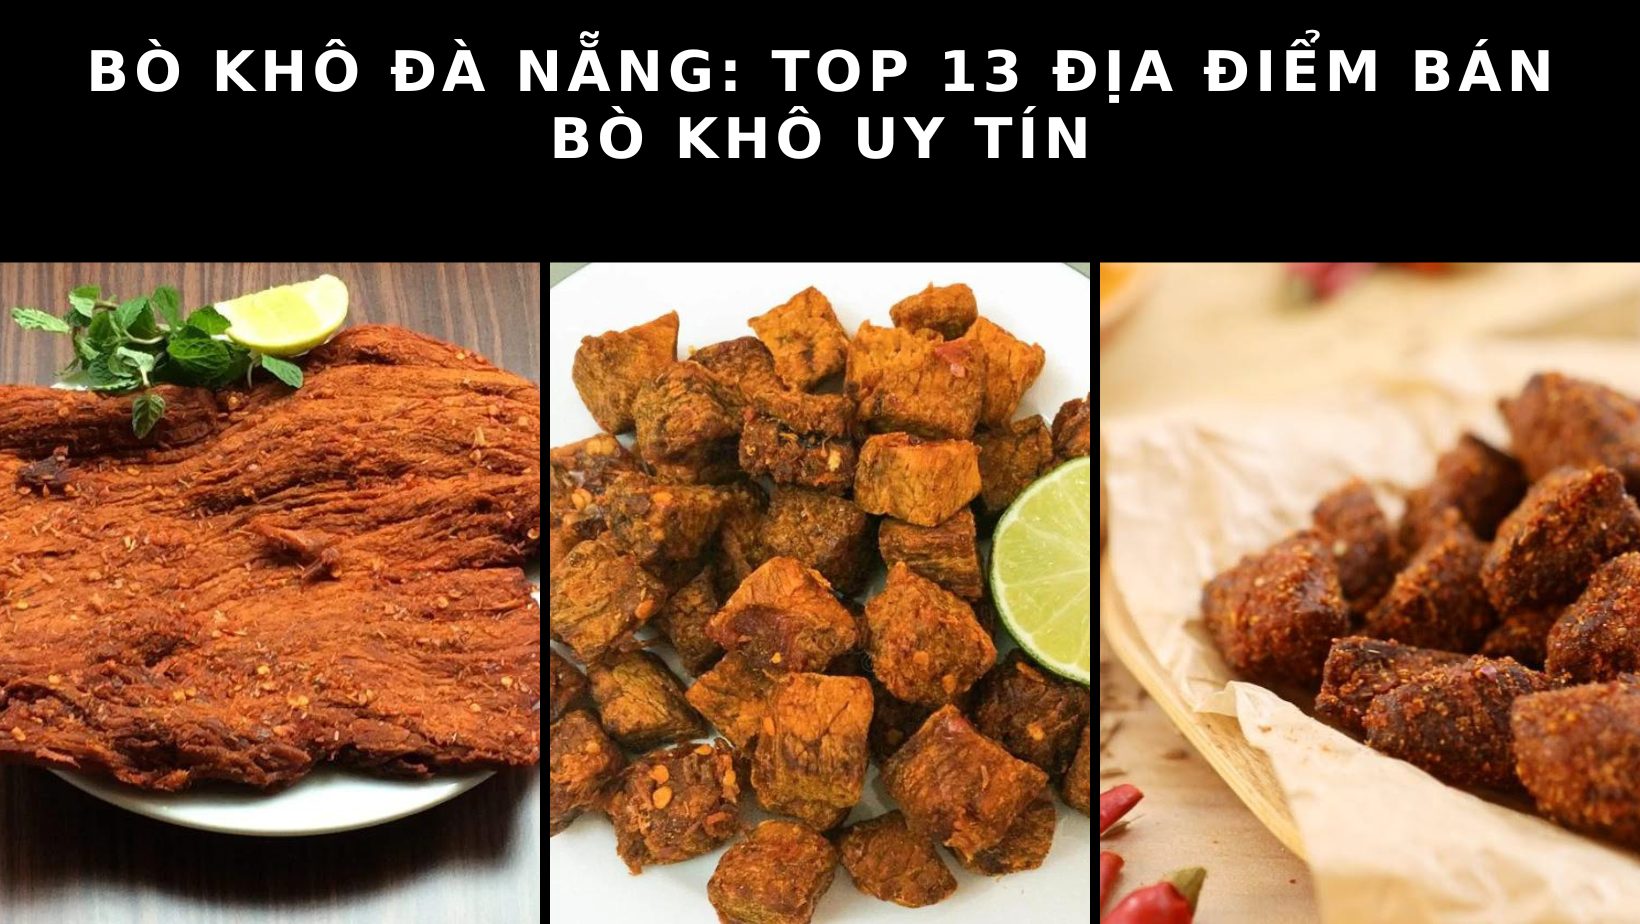 Bò khô Đà Nẵng: Top 13 địa điểm bán bò khô uy tín